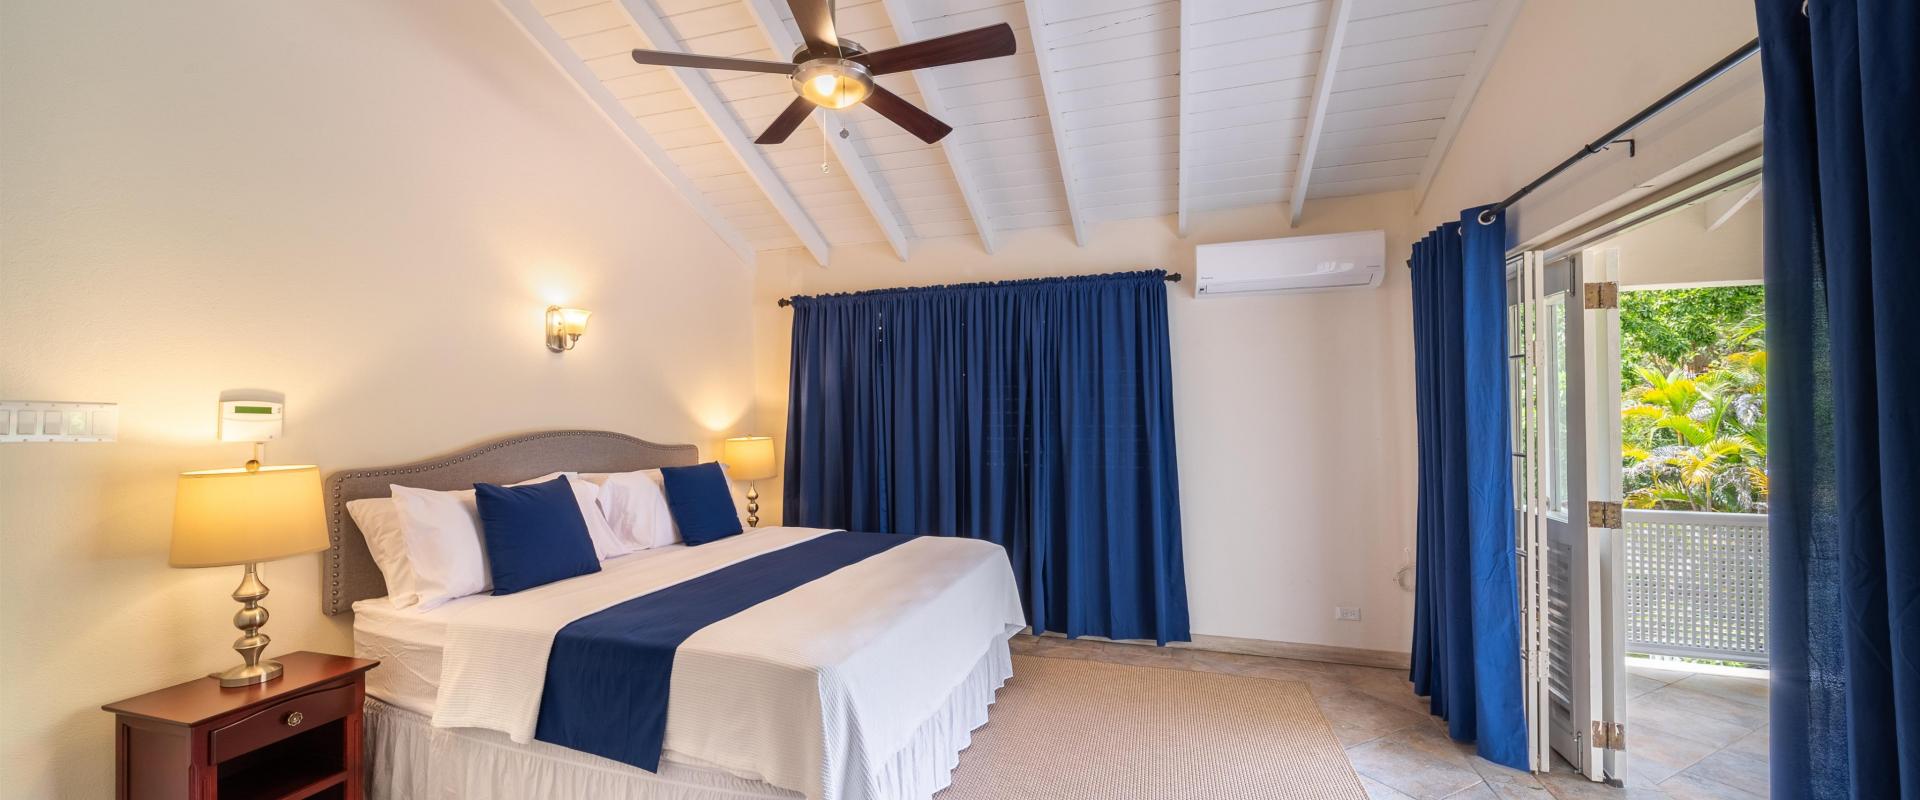 149 Salters Road Barbados Holiday Rental Sandy Lane Barbados Master Bedroom 2 With Patio View